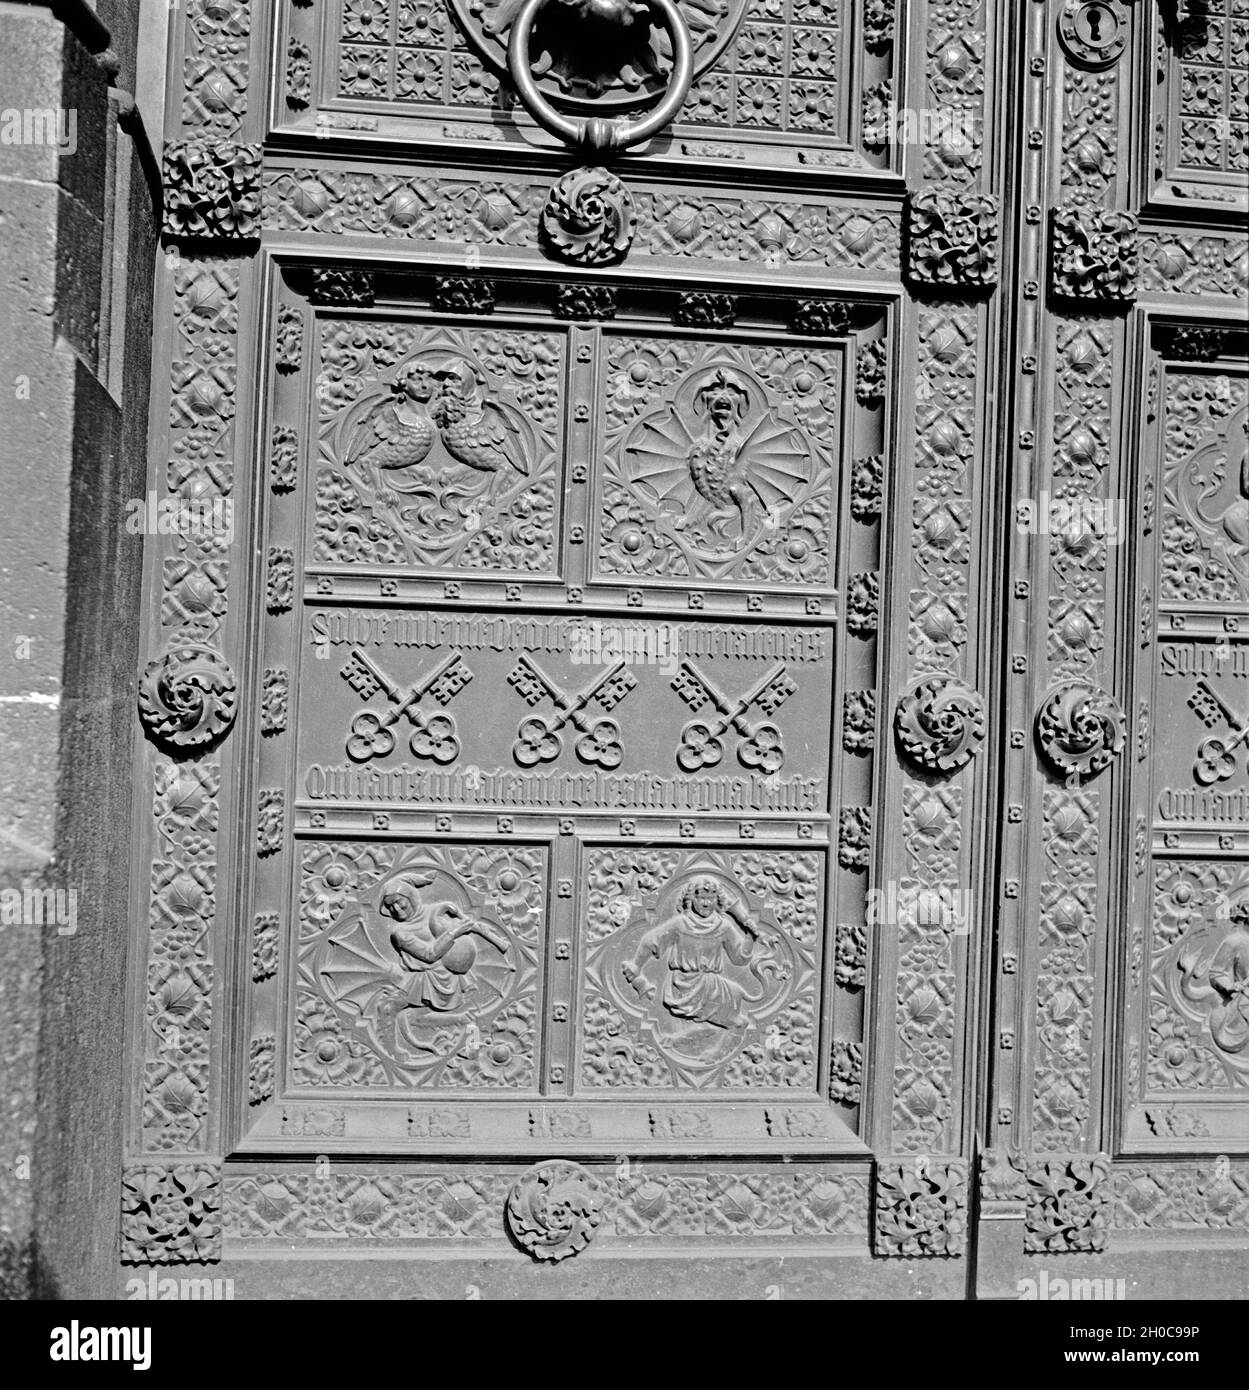 Lateinische Inschrift an einer der Eingangstüren des Hohen Domes zu Köln, 1930er Jahre. Latin inscriptions on the entrance of the Cologne cathedral, 1930s. Stock Photo